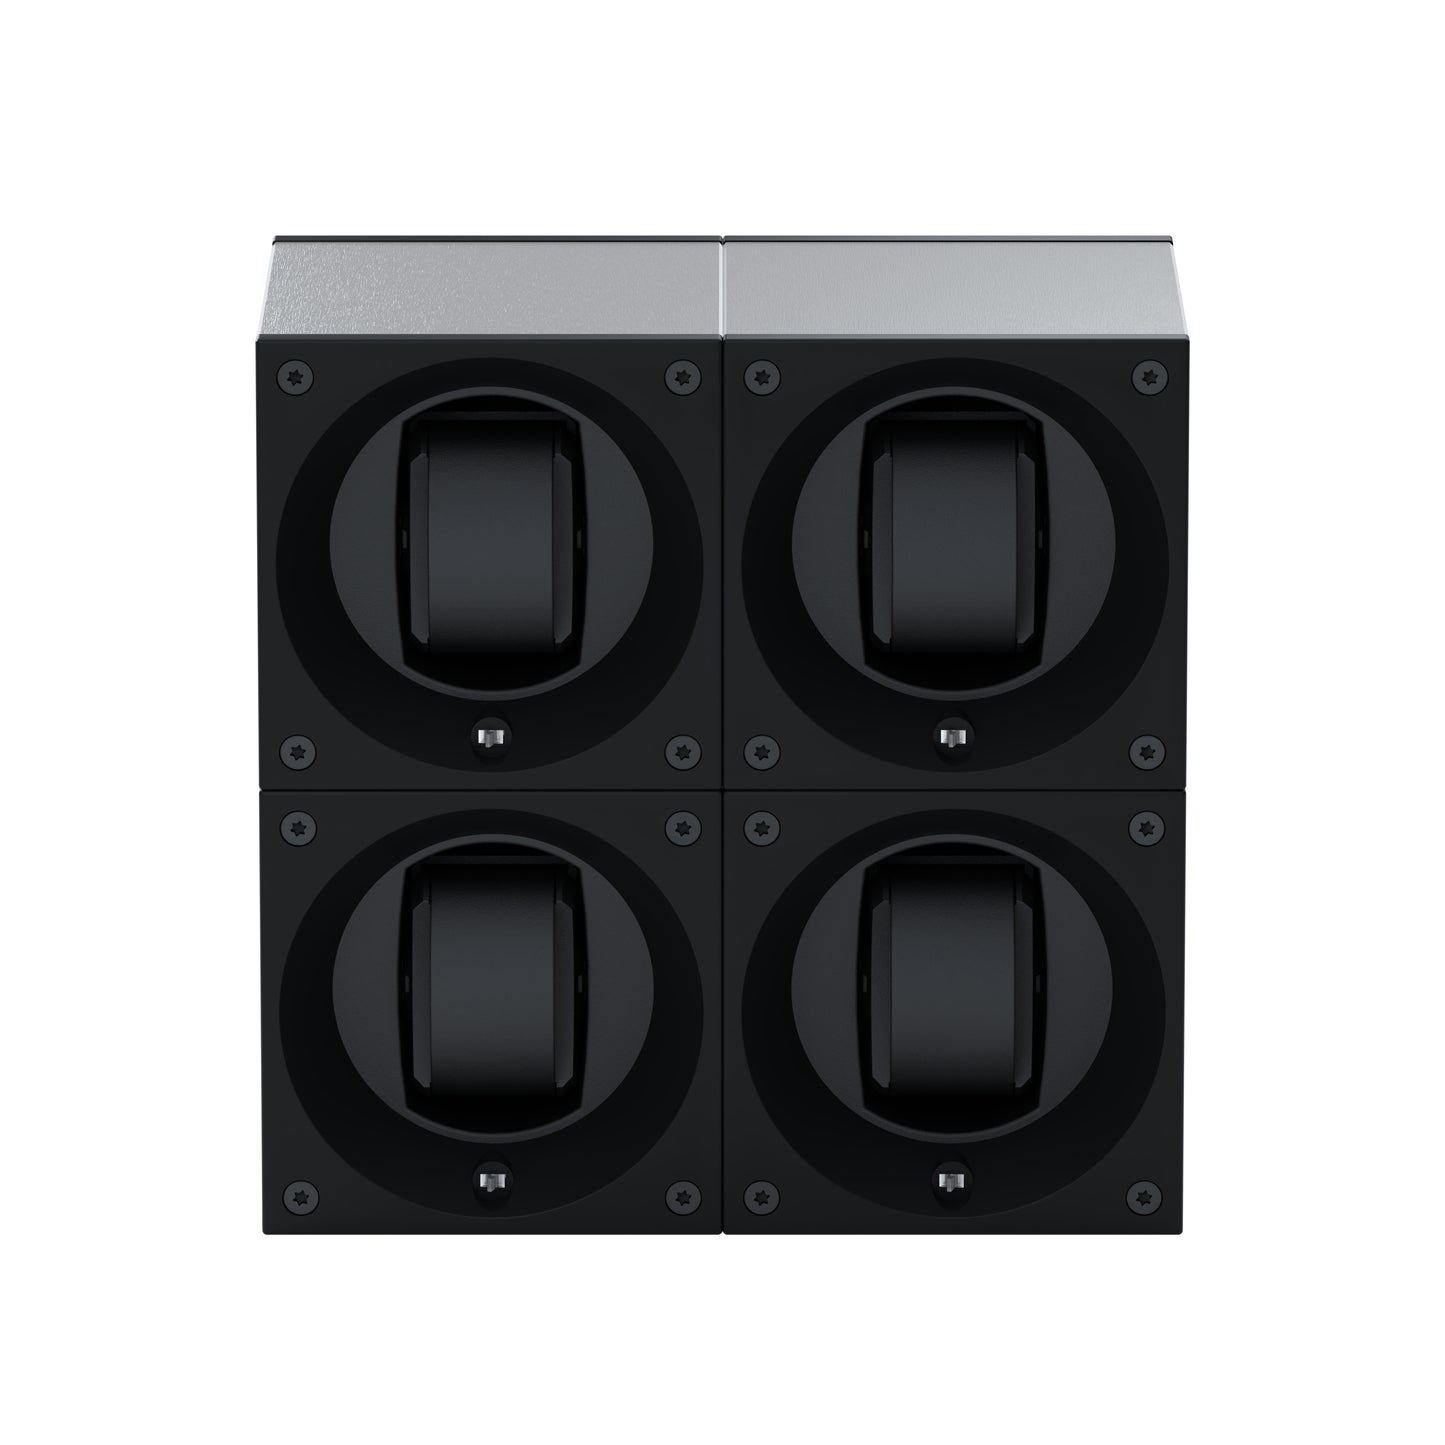 Masterbox 4 montres Aluminium Brossé : écrin rotatif pour montre automatique